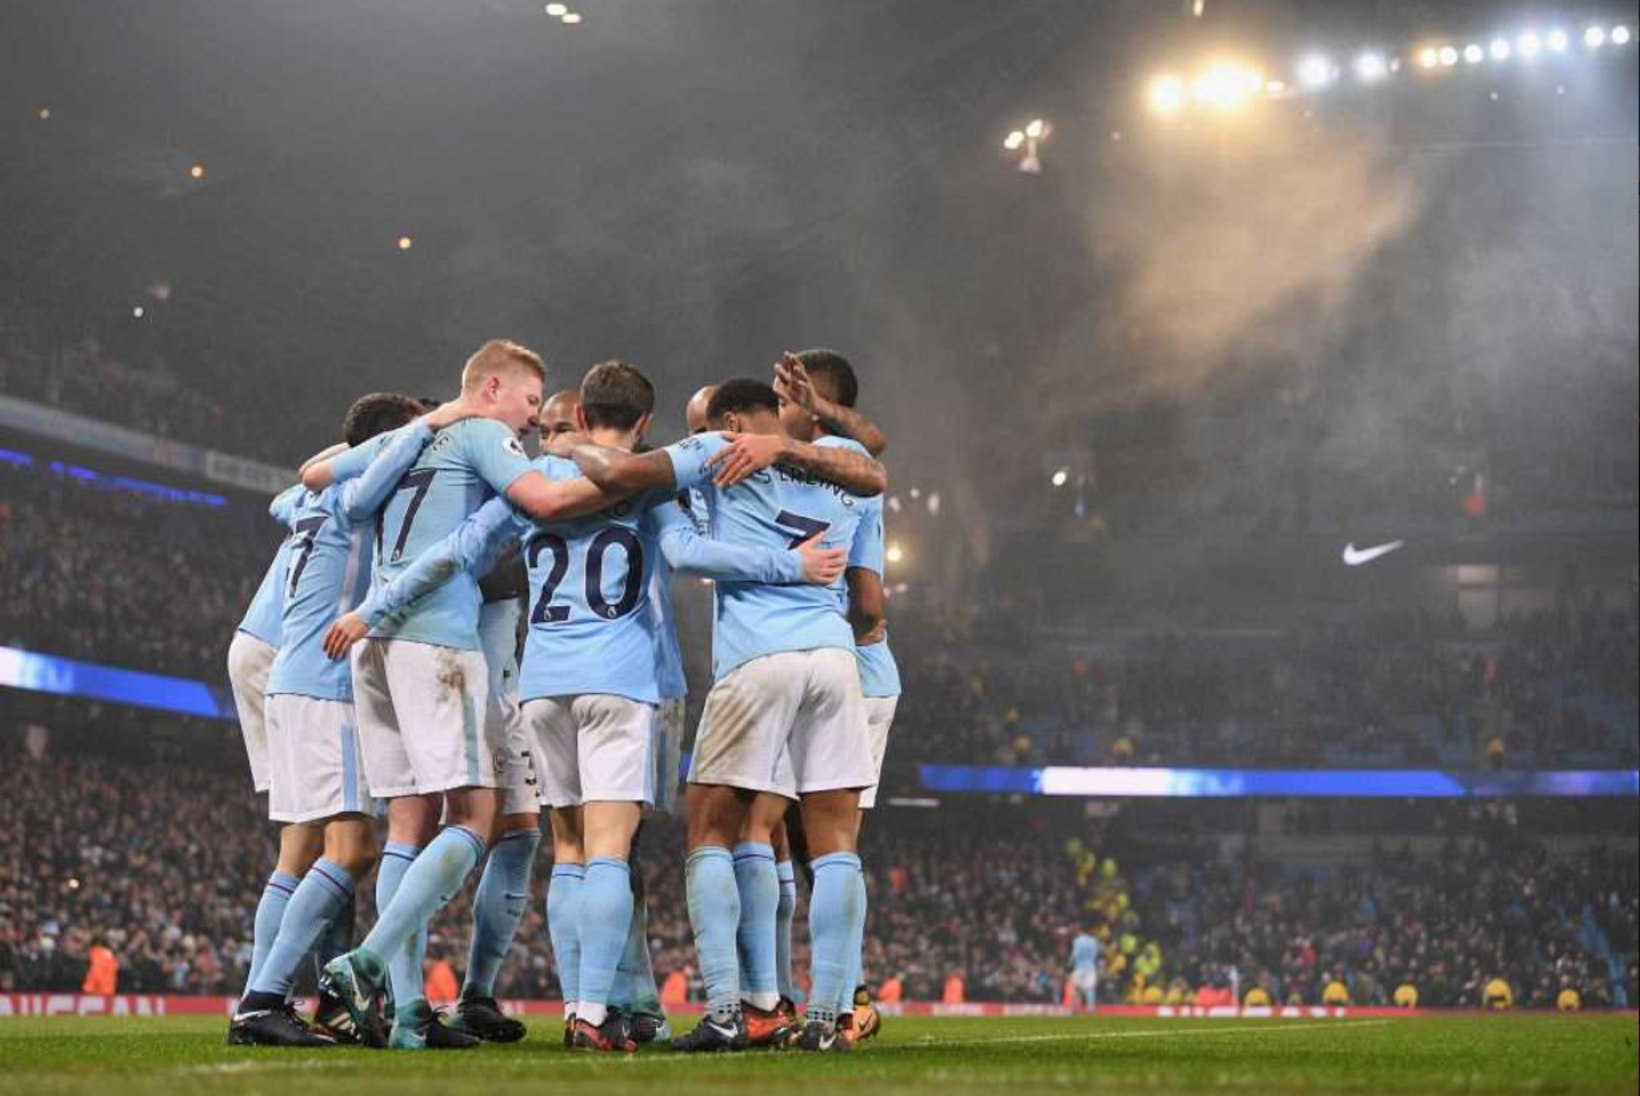 NII SEE JUHTUS | Sport 02.01: Manchester City jätkas uuel aastal vana hooga